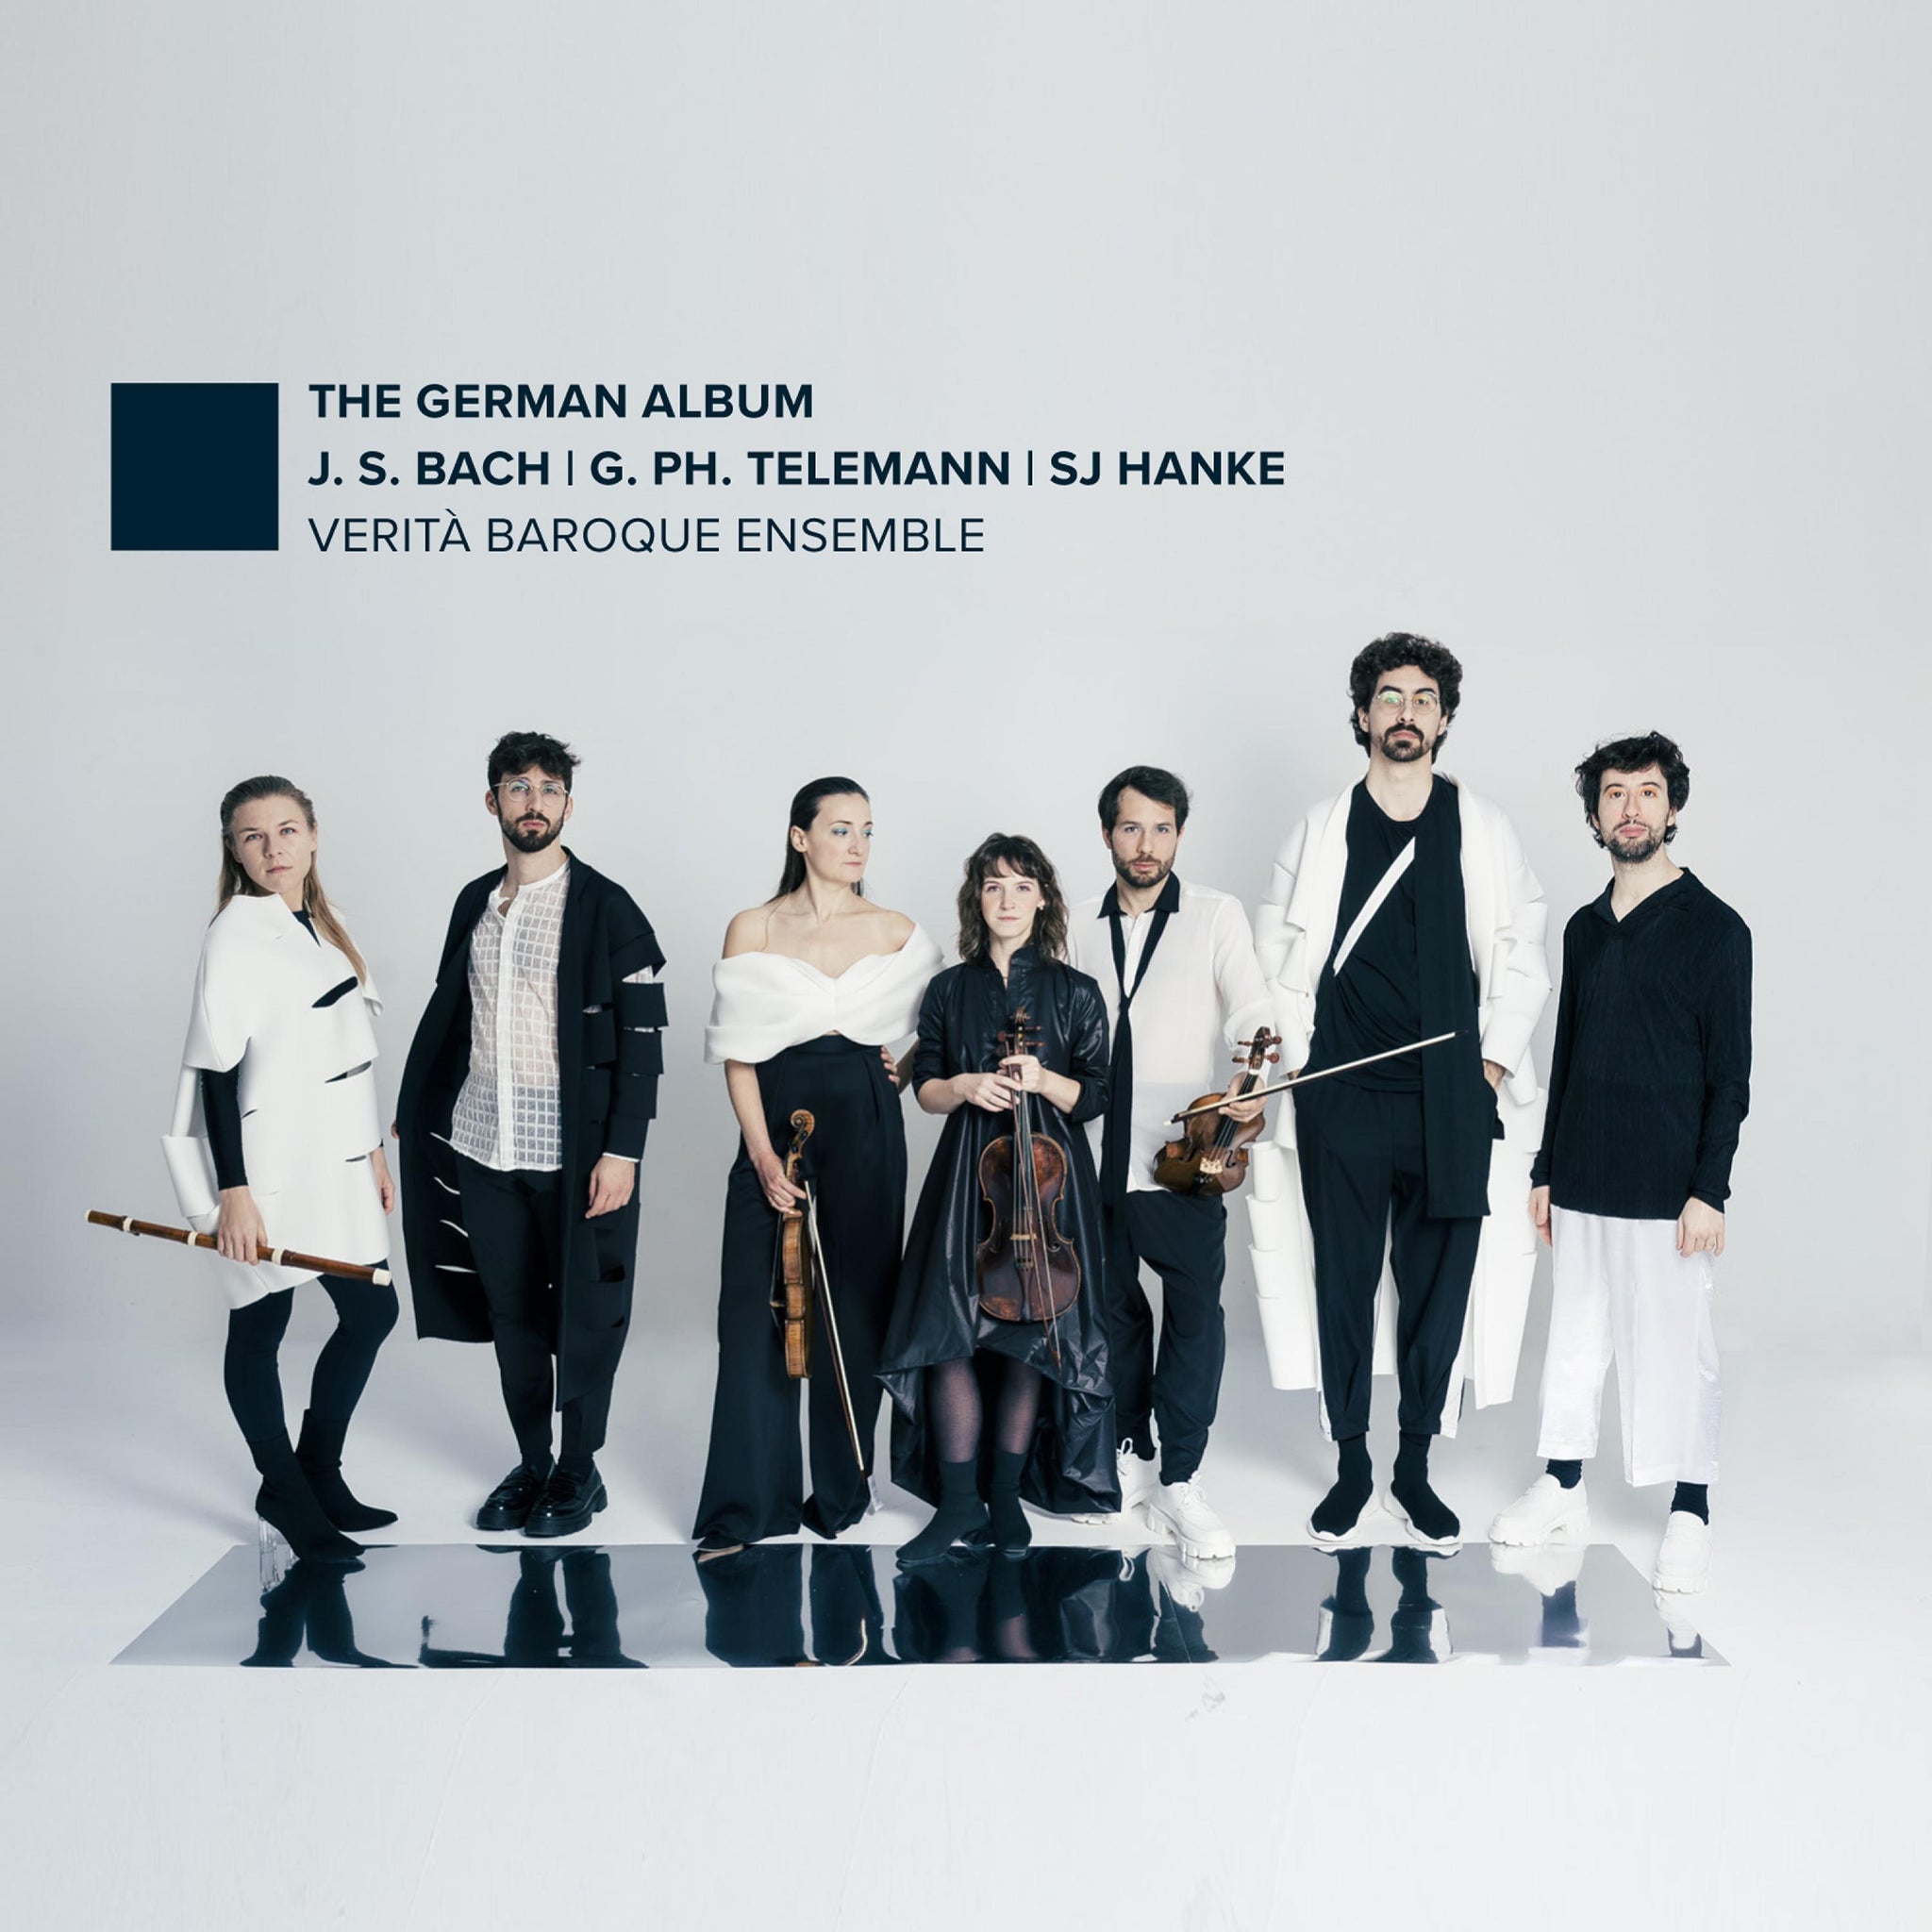 Bach, Hanke, Telemann: The German Album / VERITÀ Baroque Ensemble